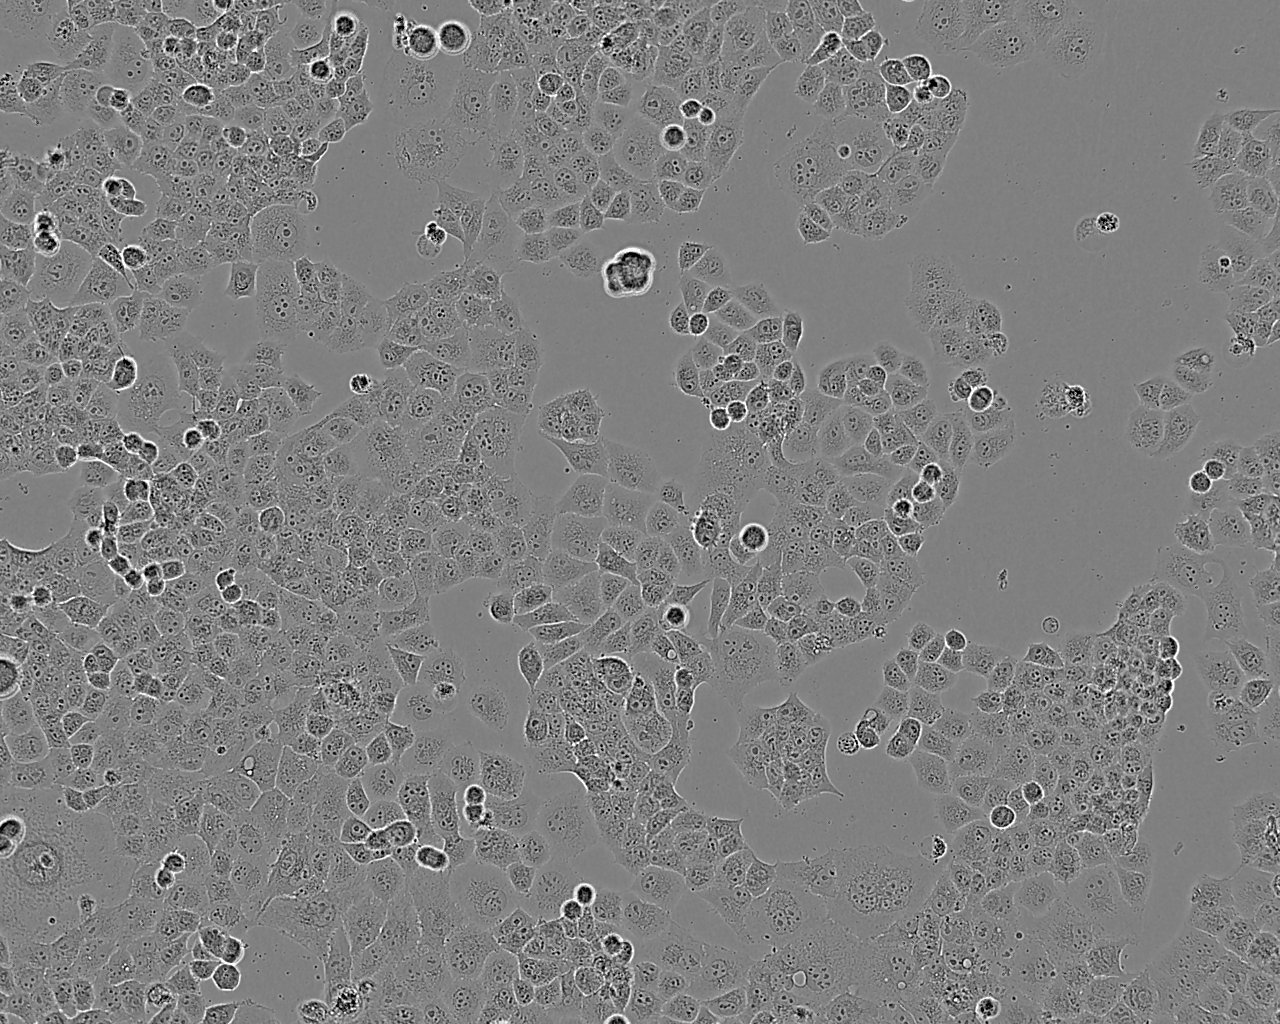 CTLA4 Ig-24 cell line中国仓鼠卵巢细胞系